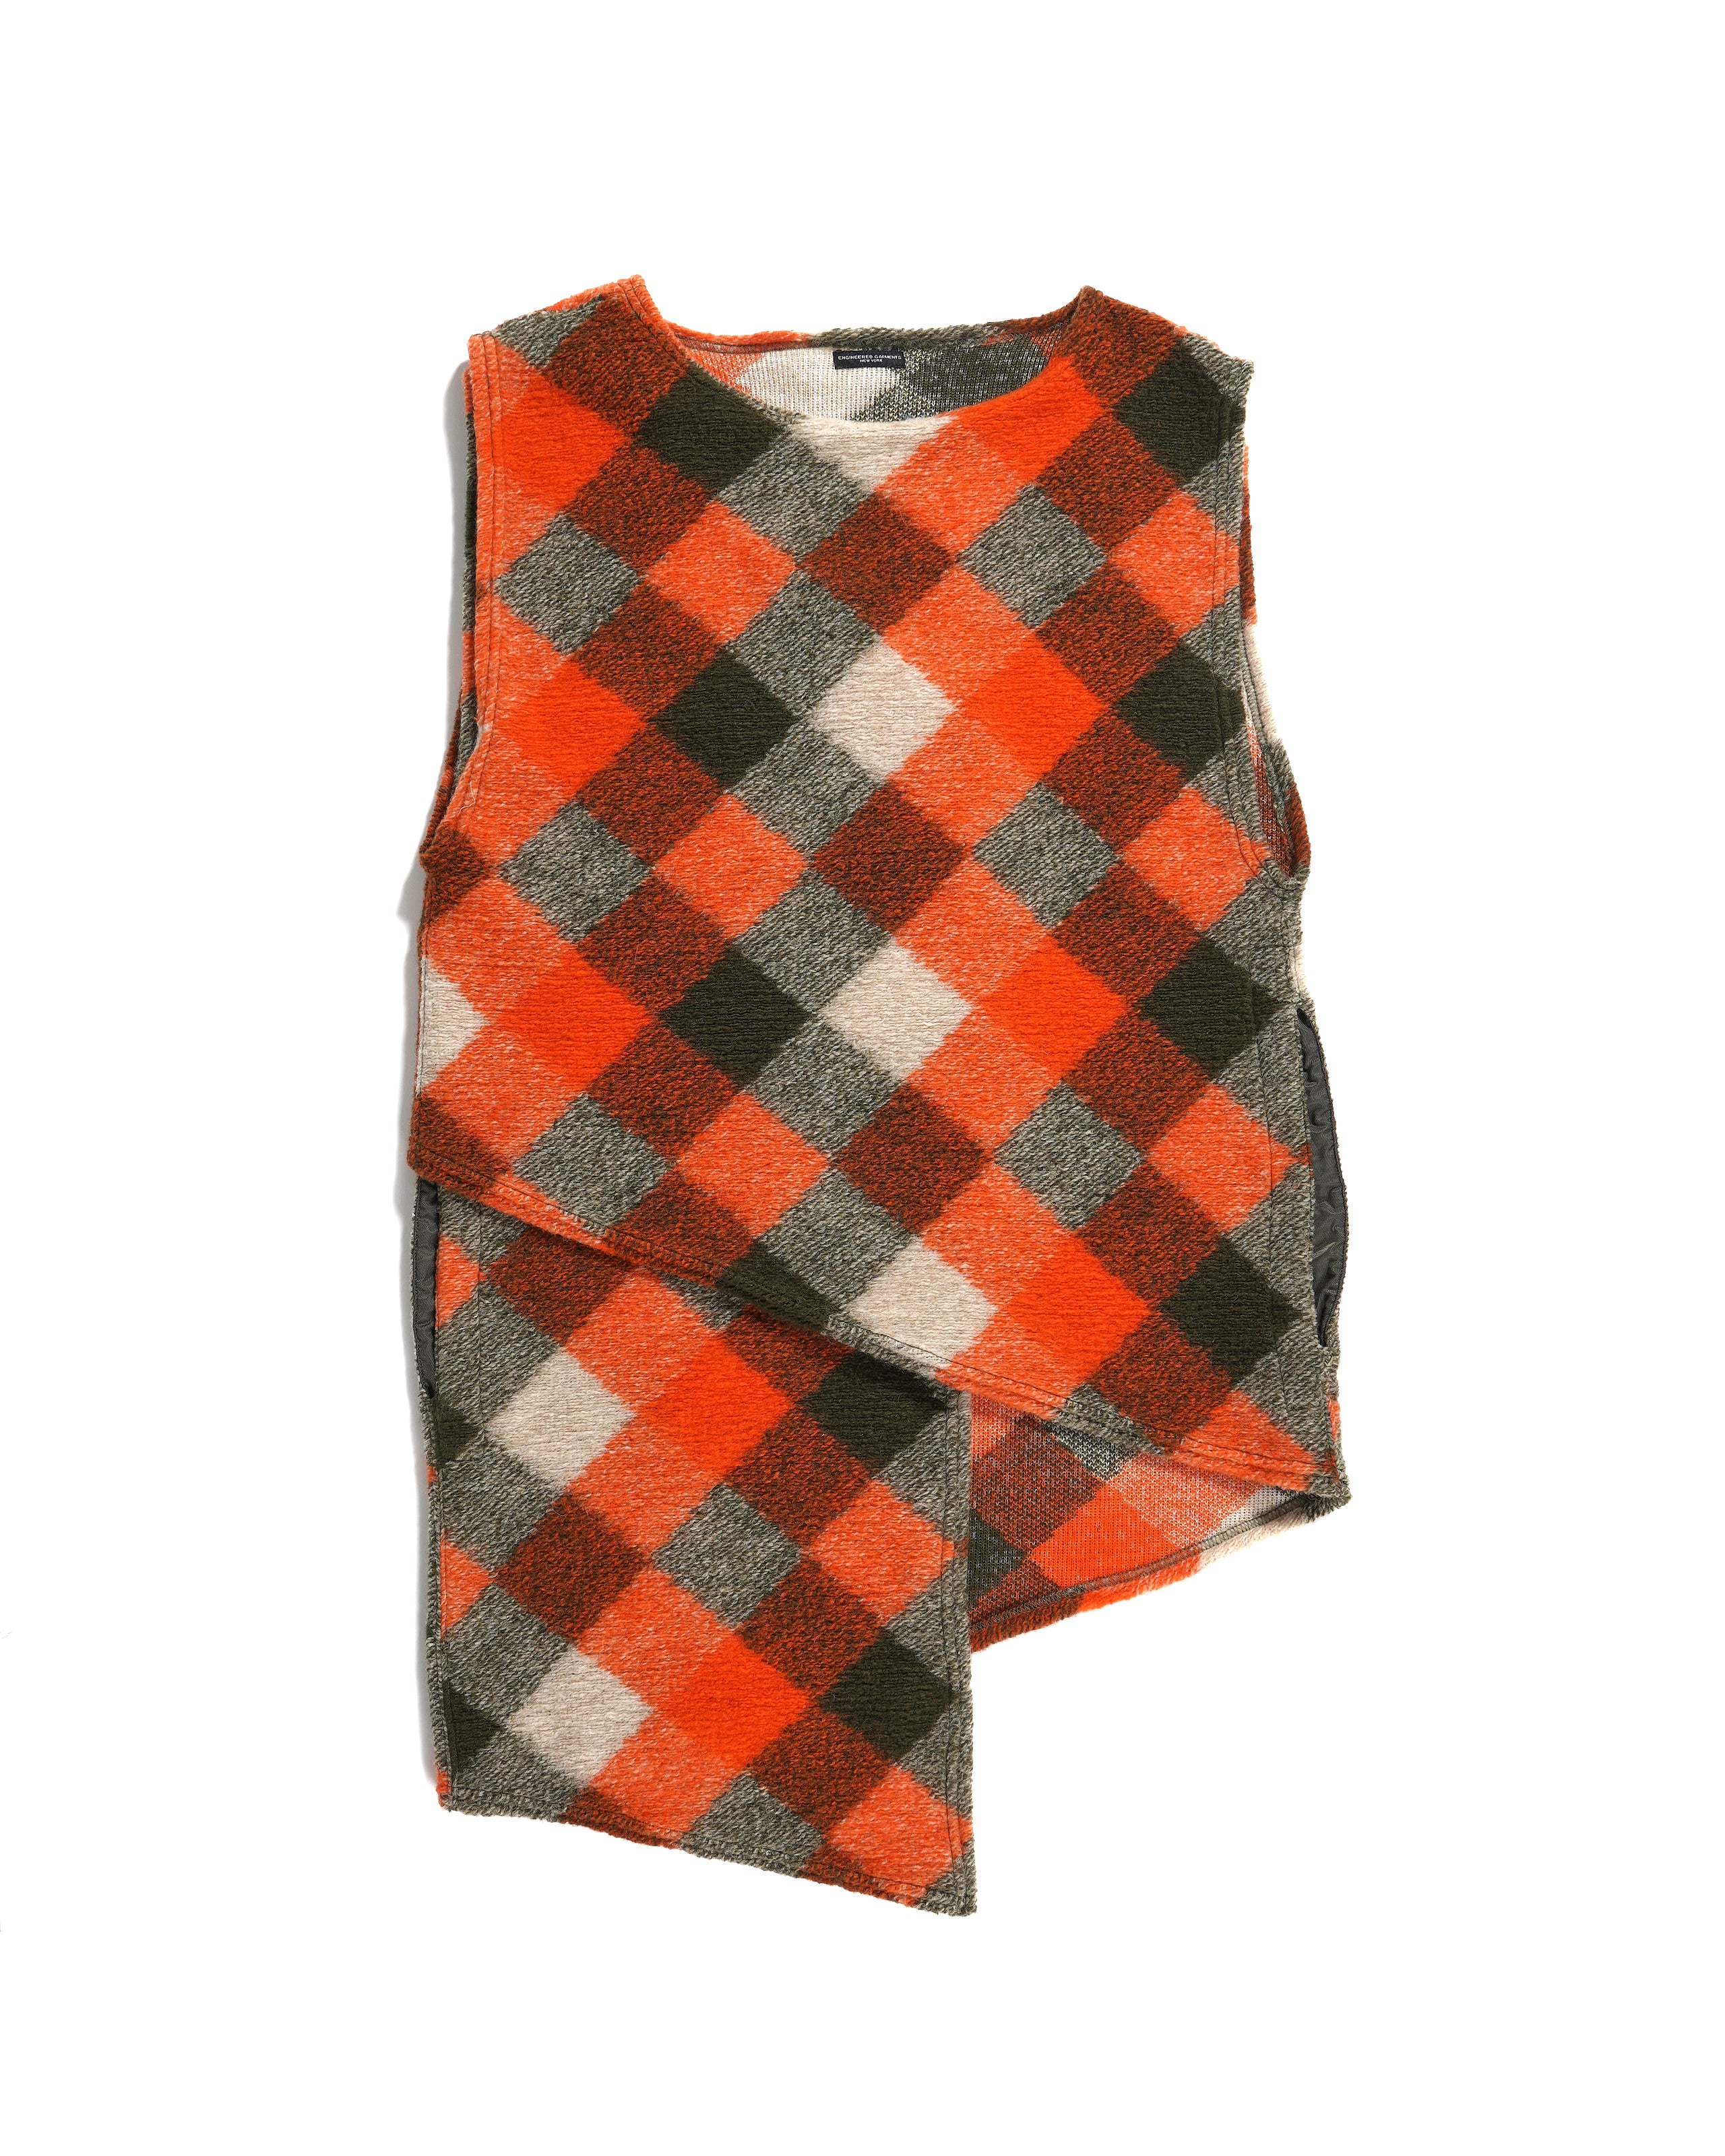 Wrap Knit Vest - Orange/Olive Poly Wool Diamond Knit